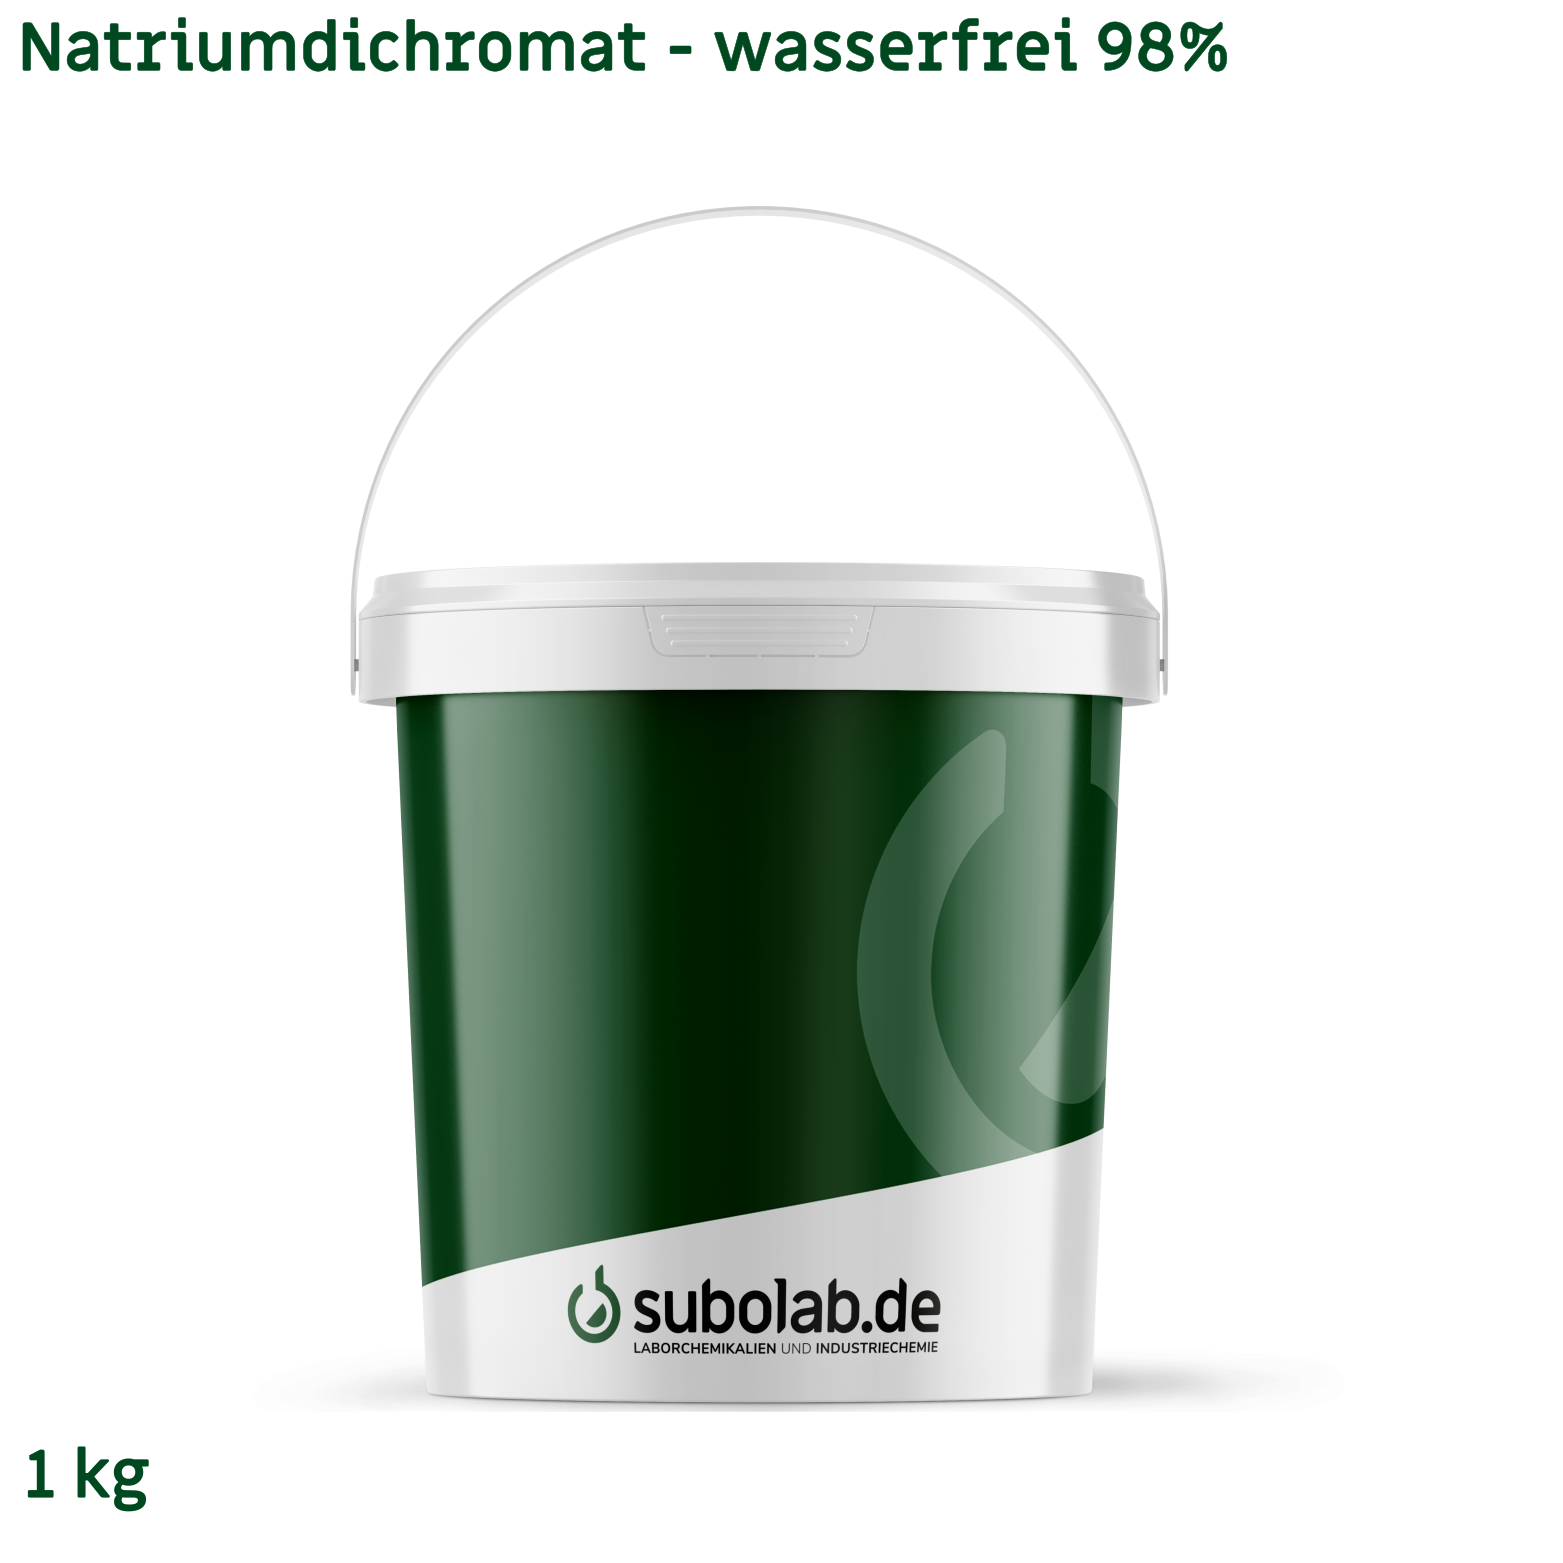 Bild von Natriumdichromat - wasserfrei 98% (1 kg)